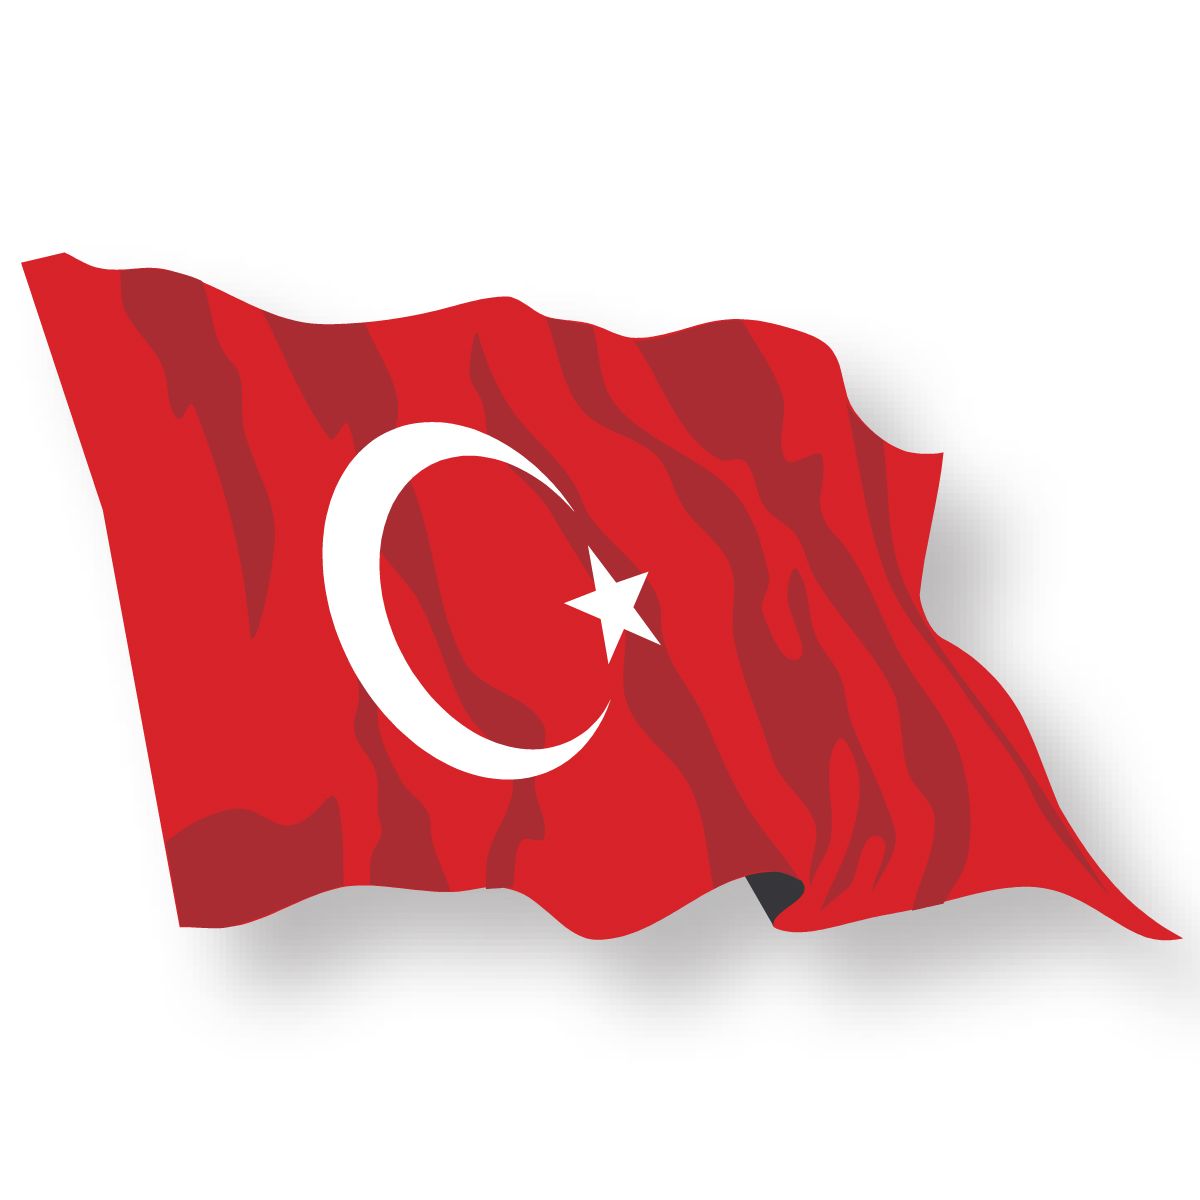 Beyaz turk bayragi resimleri 7